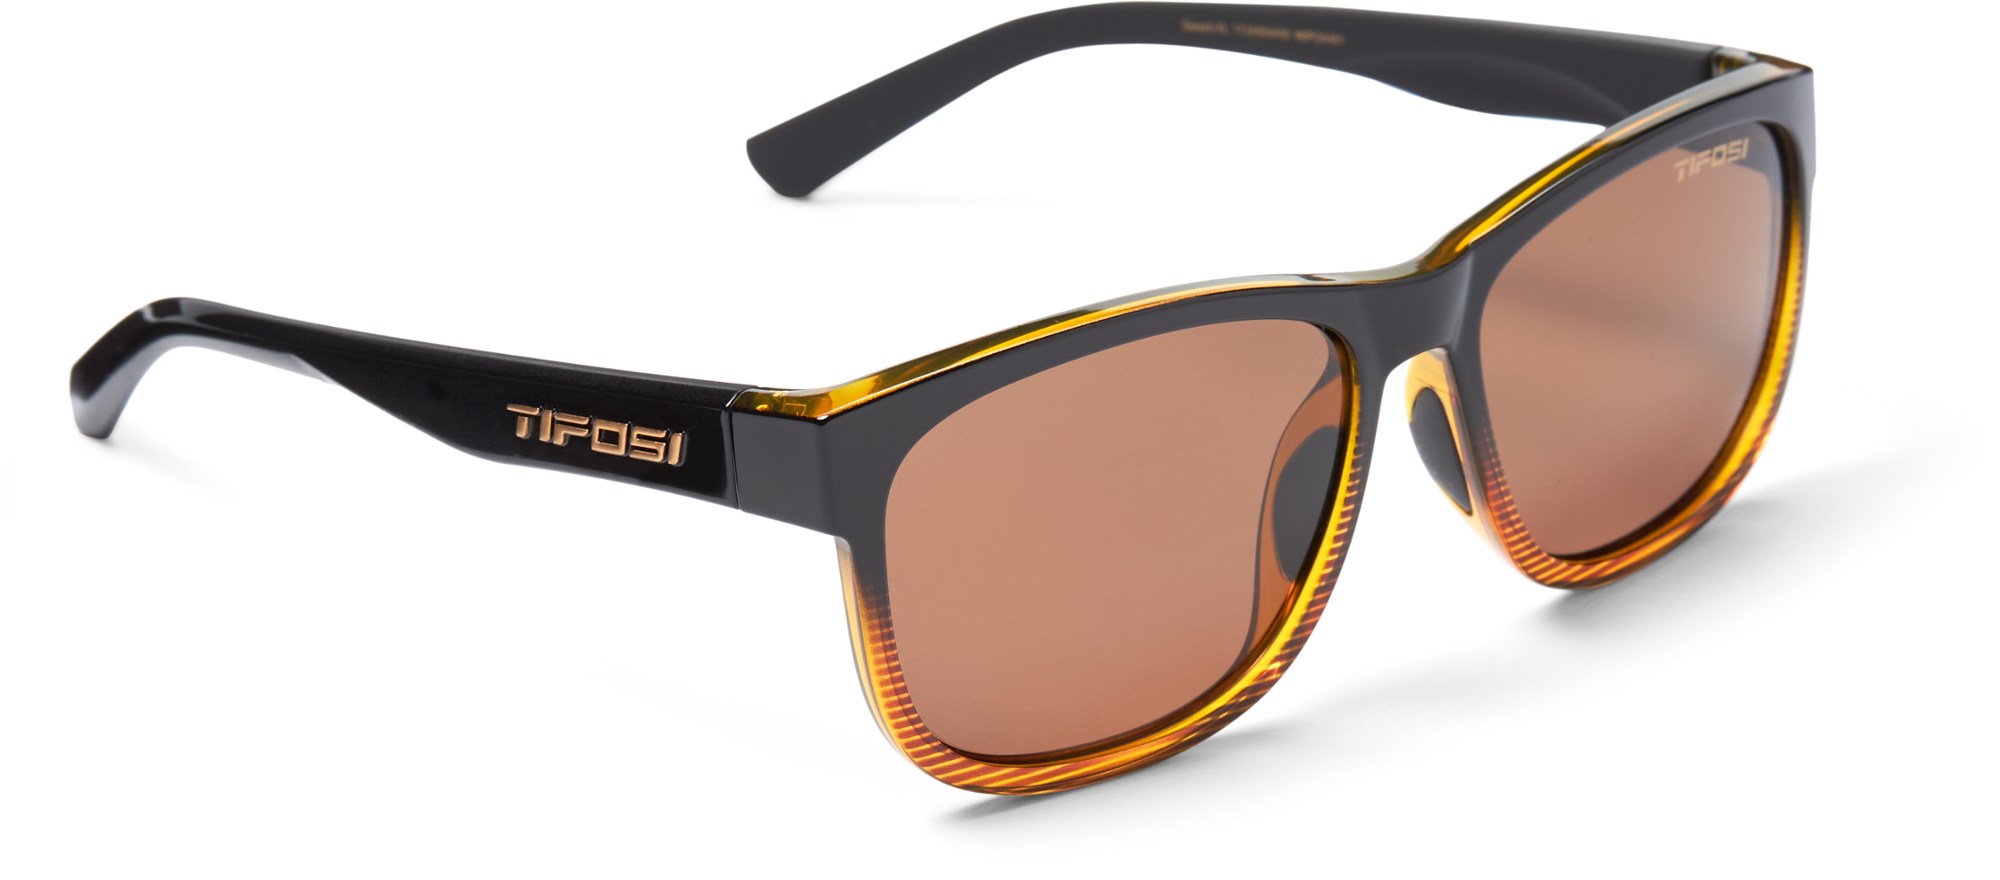 Поляризованные солнцезащитные очки Swank XL Tifosi, коричневый солнцезащитные очки veloce golf tifosi optics цвет gloss black frame enliven golf lens